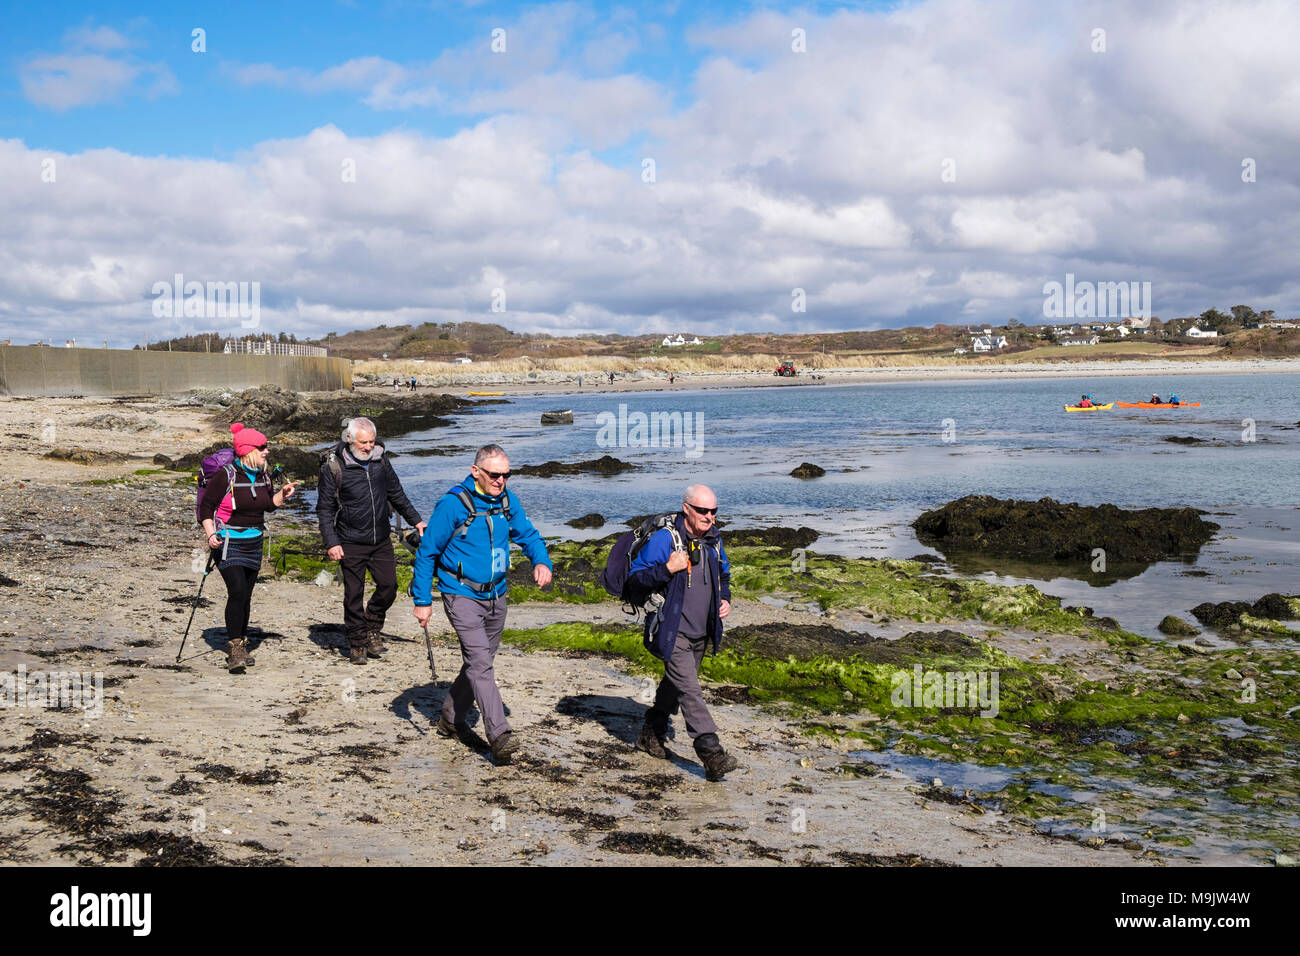 Les randonneurs randonnées autour de Borthwen Bay sur l'île d'Anglesey Coast Path. Rhoscolyn, Holy Island, Anglesey, au nord du Pays de Galles, Royaume-Uni, Angleterre Banque D'Images